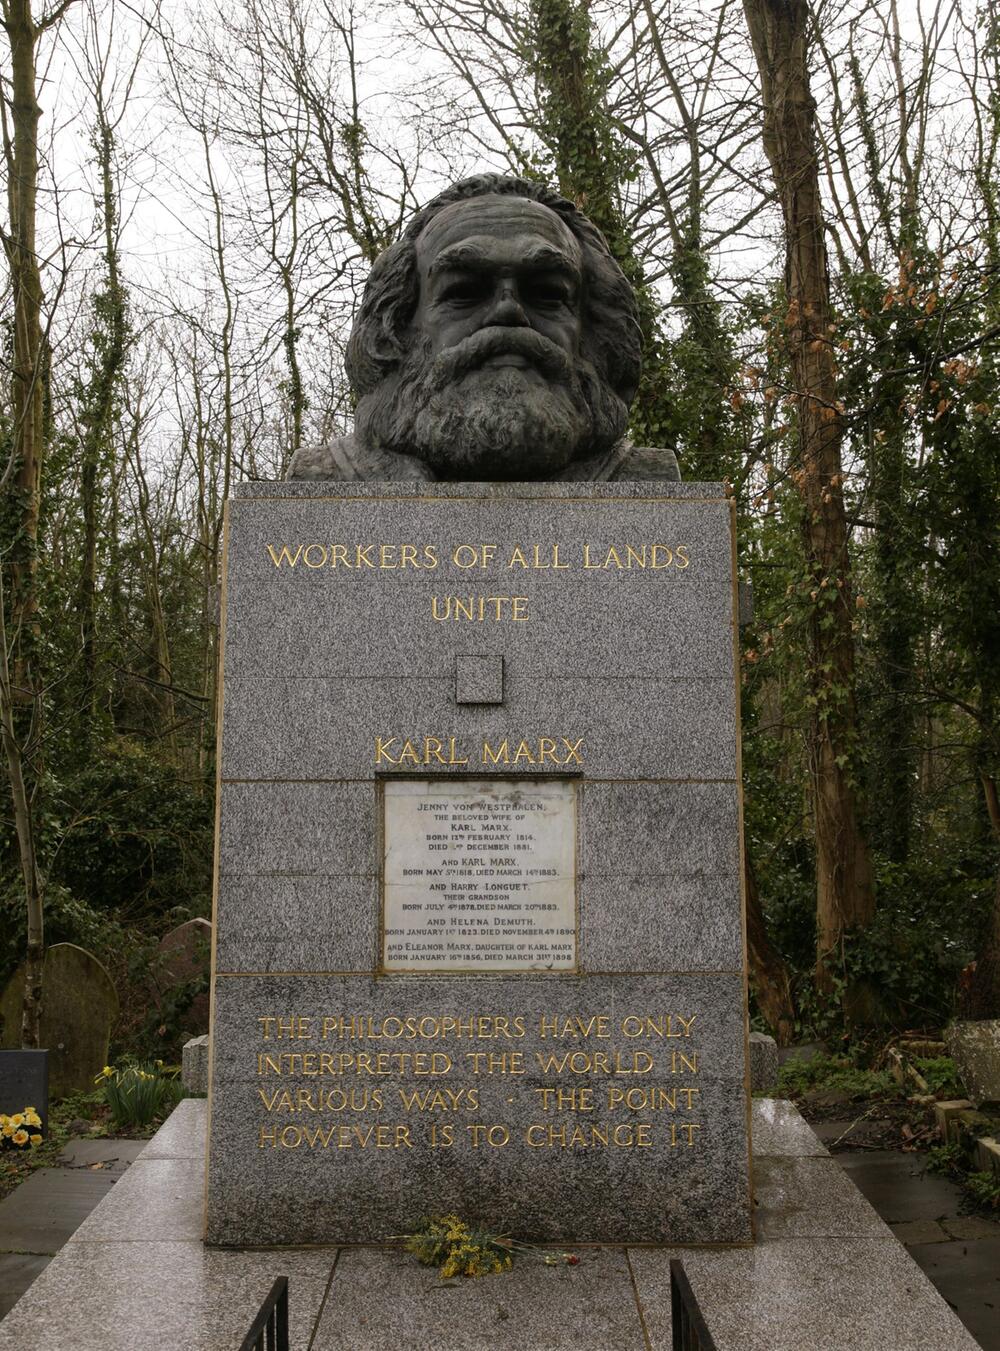 Grabstätte von Karl Marx in London beschädigt